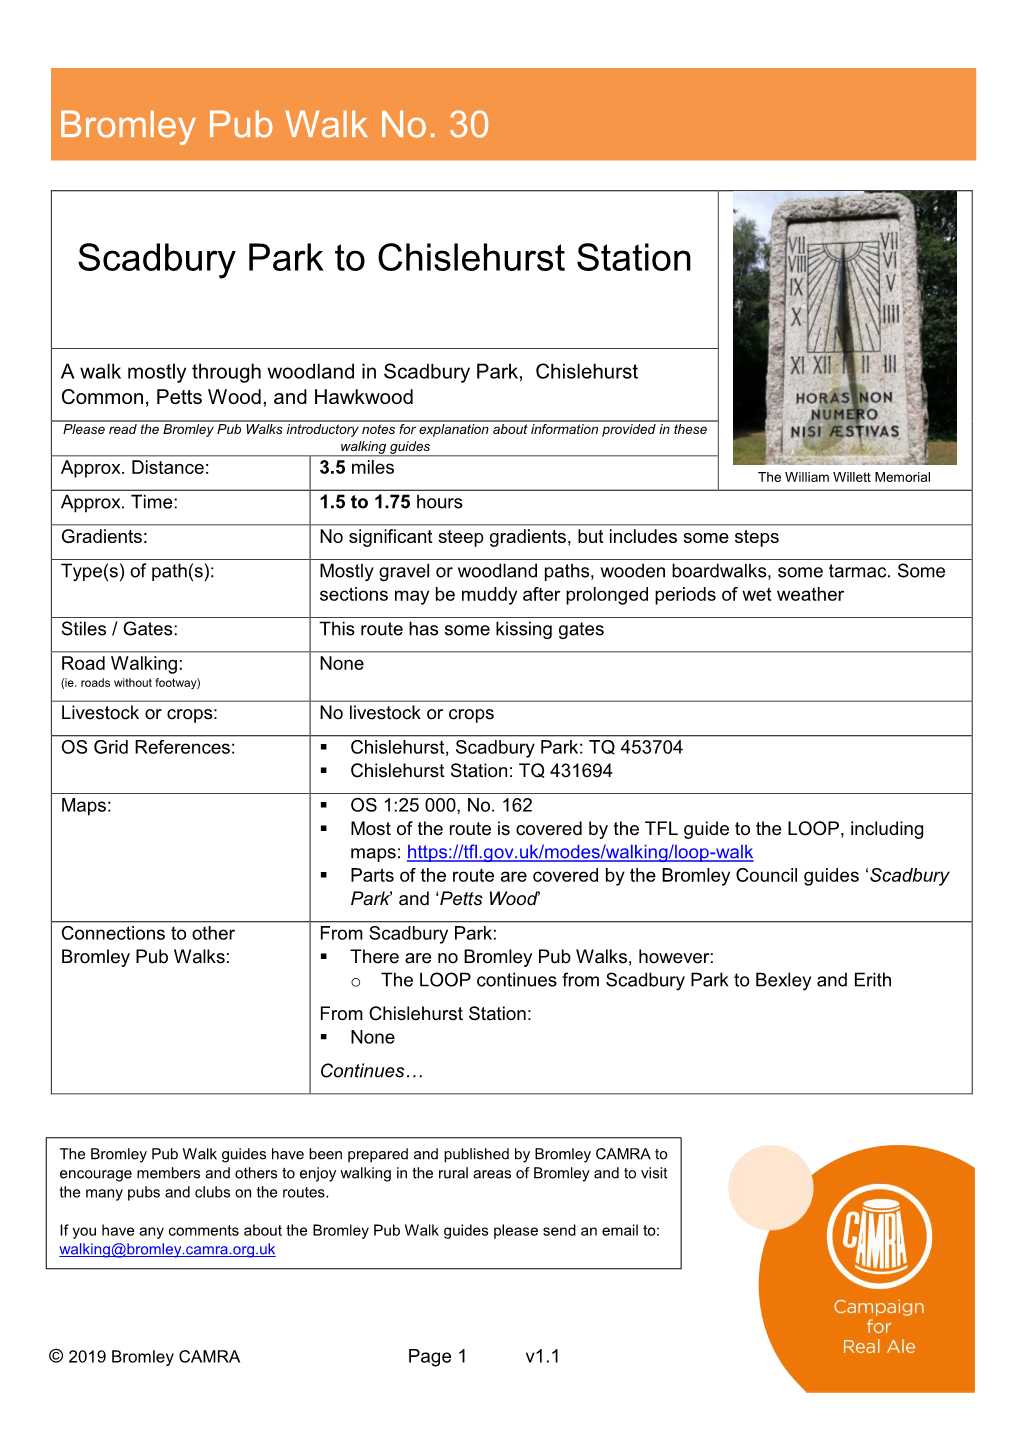 Scadbury Park to Chislehurst Station